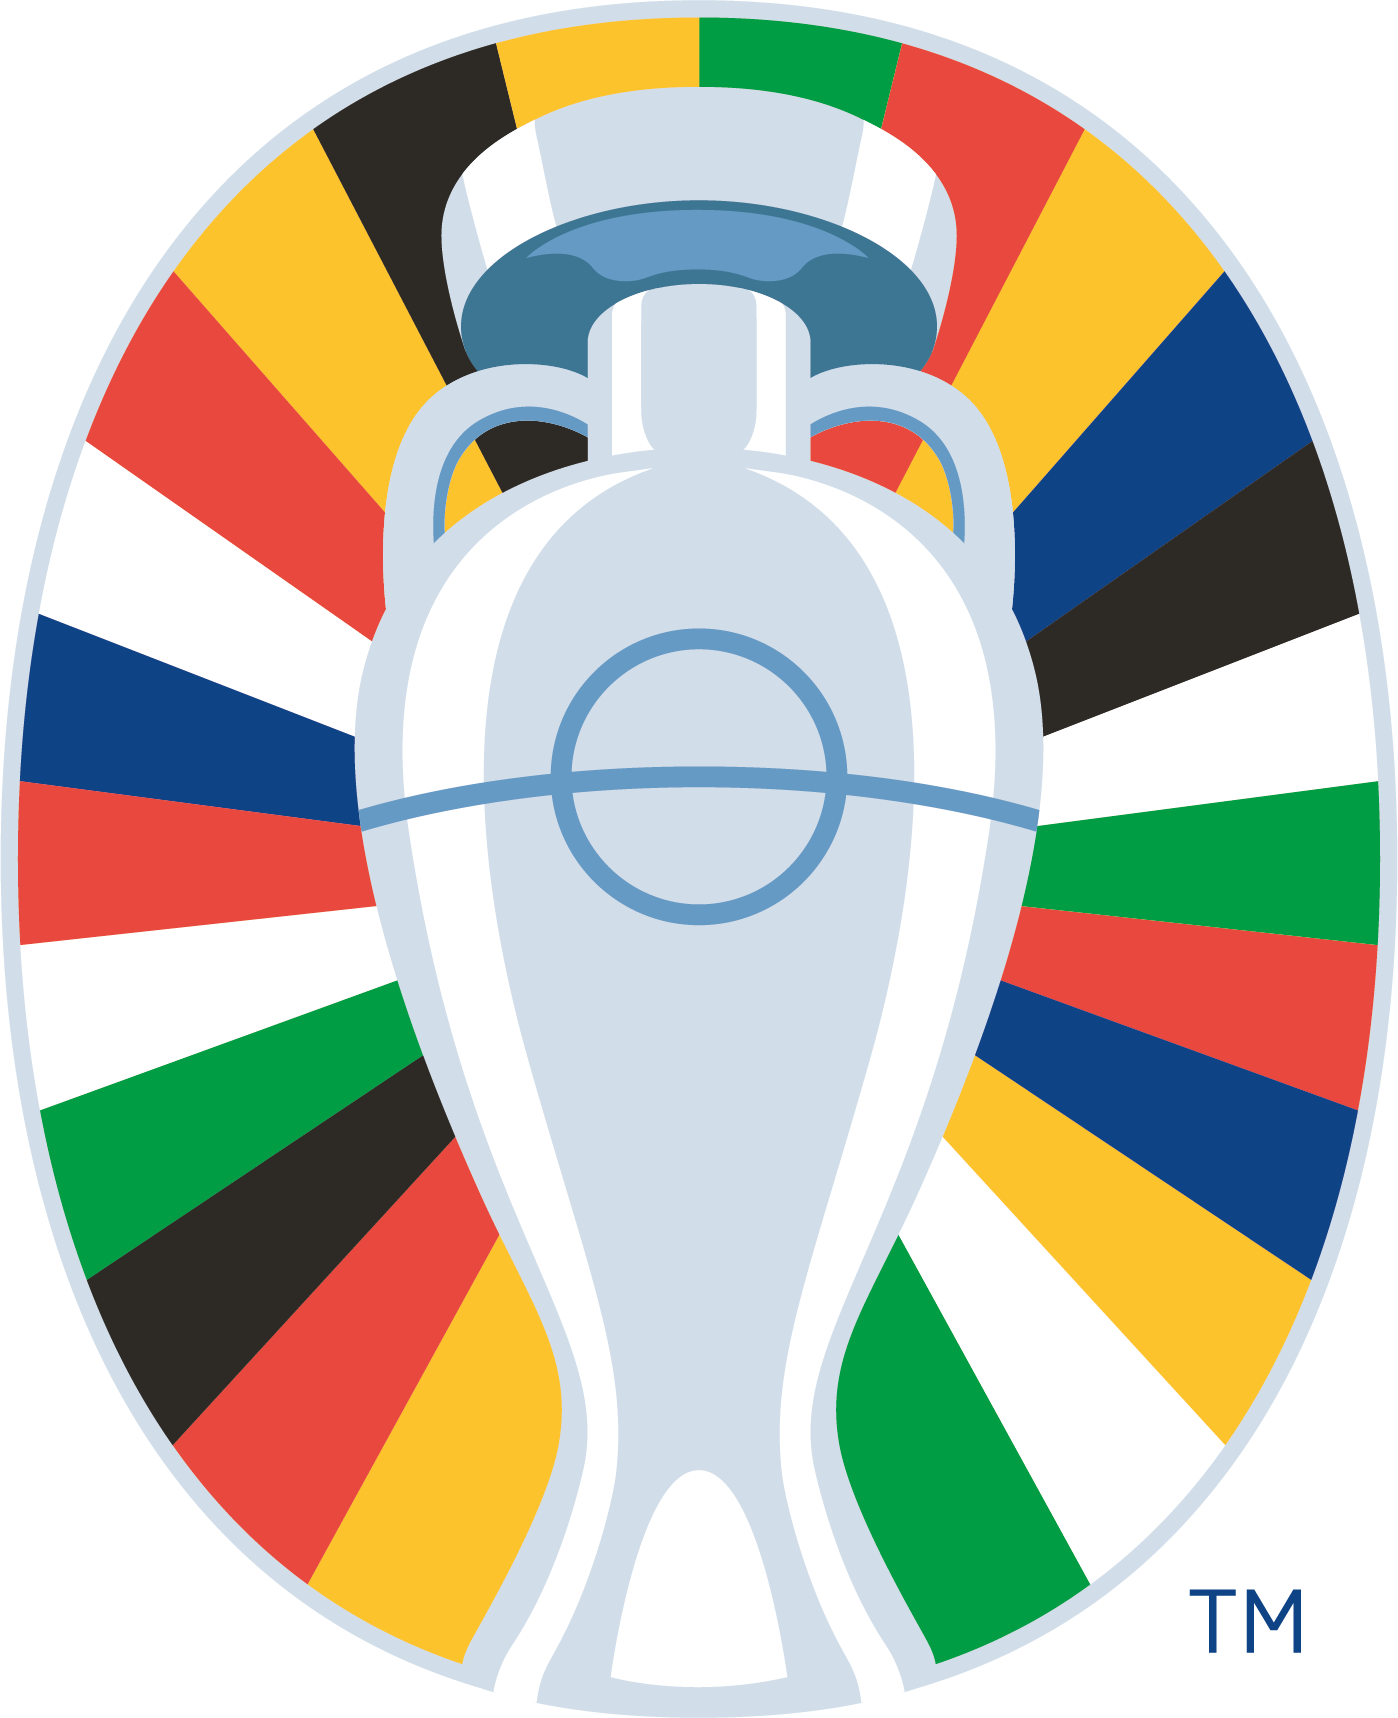 EURO 2024 Logo Icon OnLight Flat 8C ?context=bWFzdGVyfHJvb3R8MjQ0NjAzfGltYWdlL3BuZ3xoMzUvaGI4LzkxNDI2NDc1MjEzMTAvRVVST18yMDI0X0xvZ29fSWNvbl9PbkxpZ2h0X0ZsYXRfOEMucG5nfDU3YmQ1ZWYyMDQ4NGUyZjUyMzcwZTcyODJiOWEyNTg1ZGI1MzM0NjNiNjVlNTdkNGZhYjA2NmM0NWRiZTJhYWY